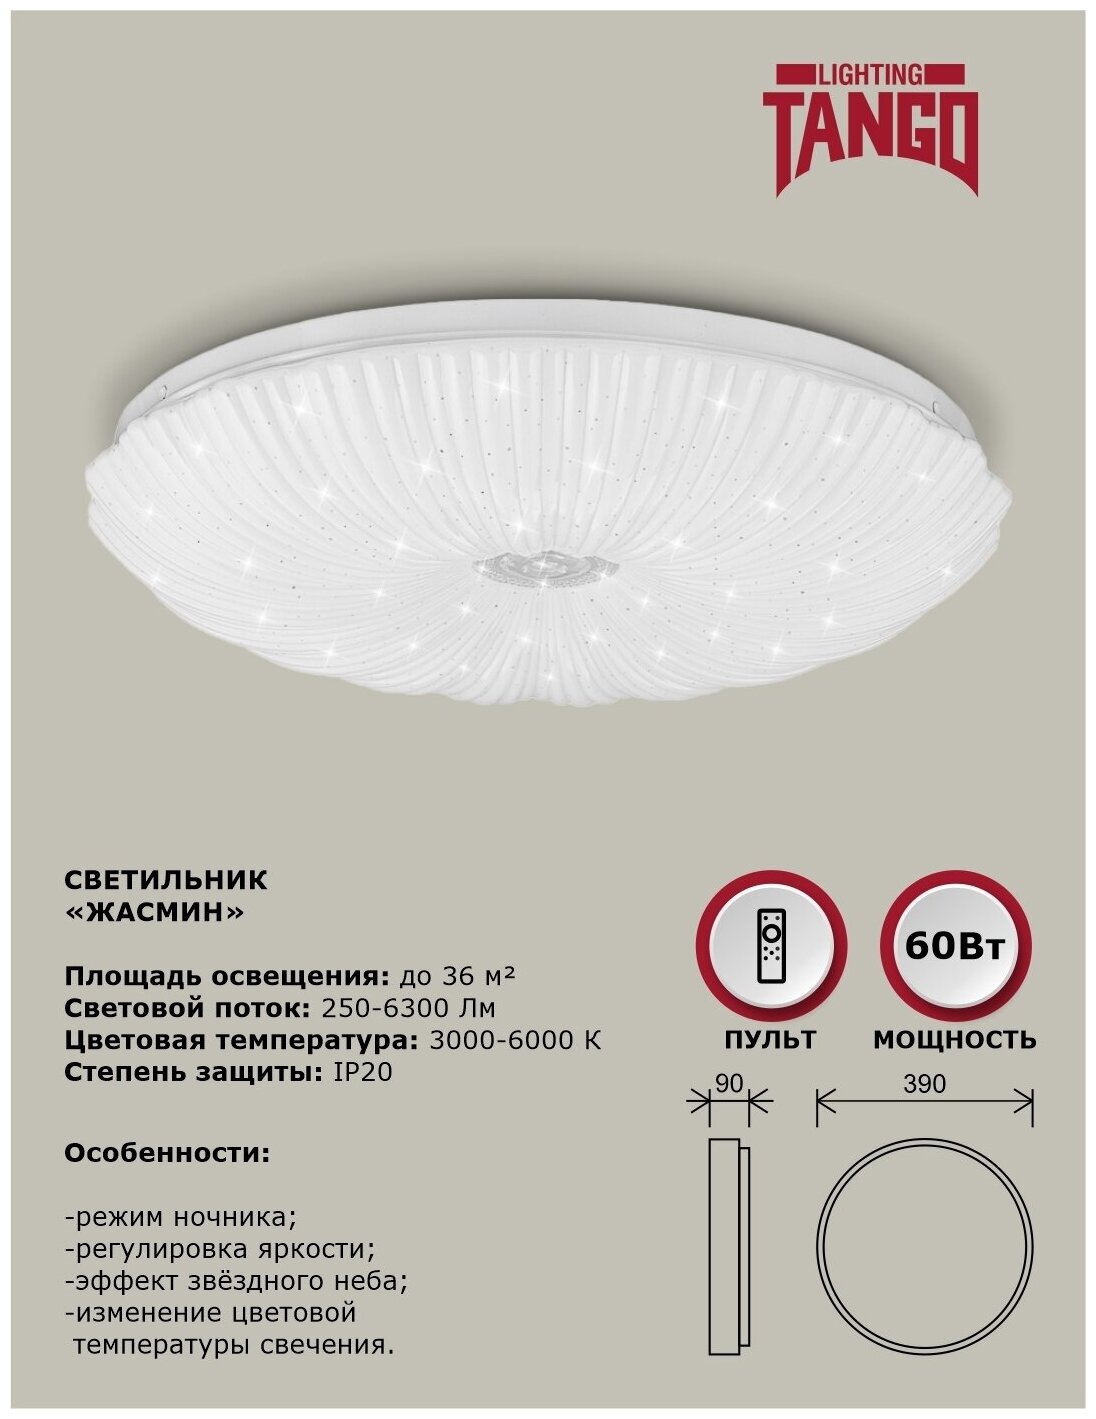 Cветильник светодиодный настенно-потолочный "жасмин" 60Вт (390*90, основ. 350мм) с пультом ИК ДУ TANGO россия LED